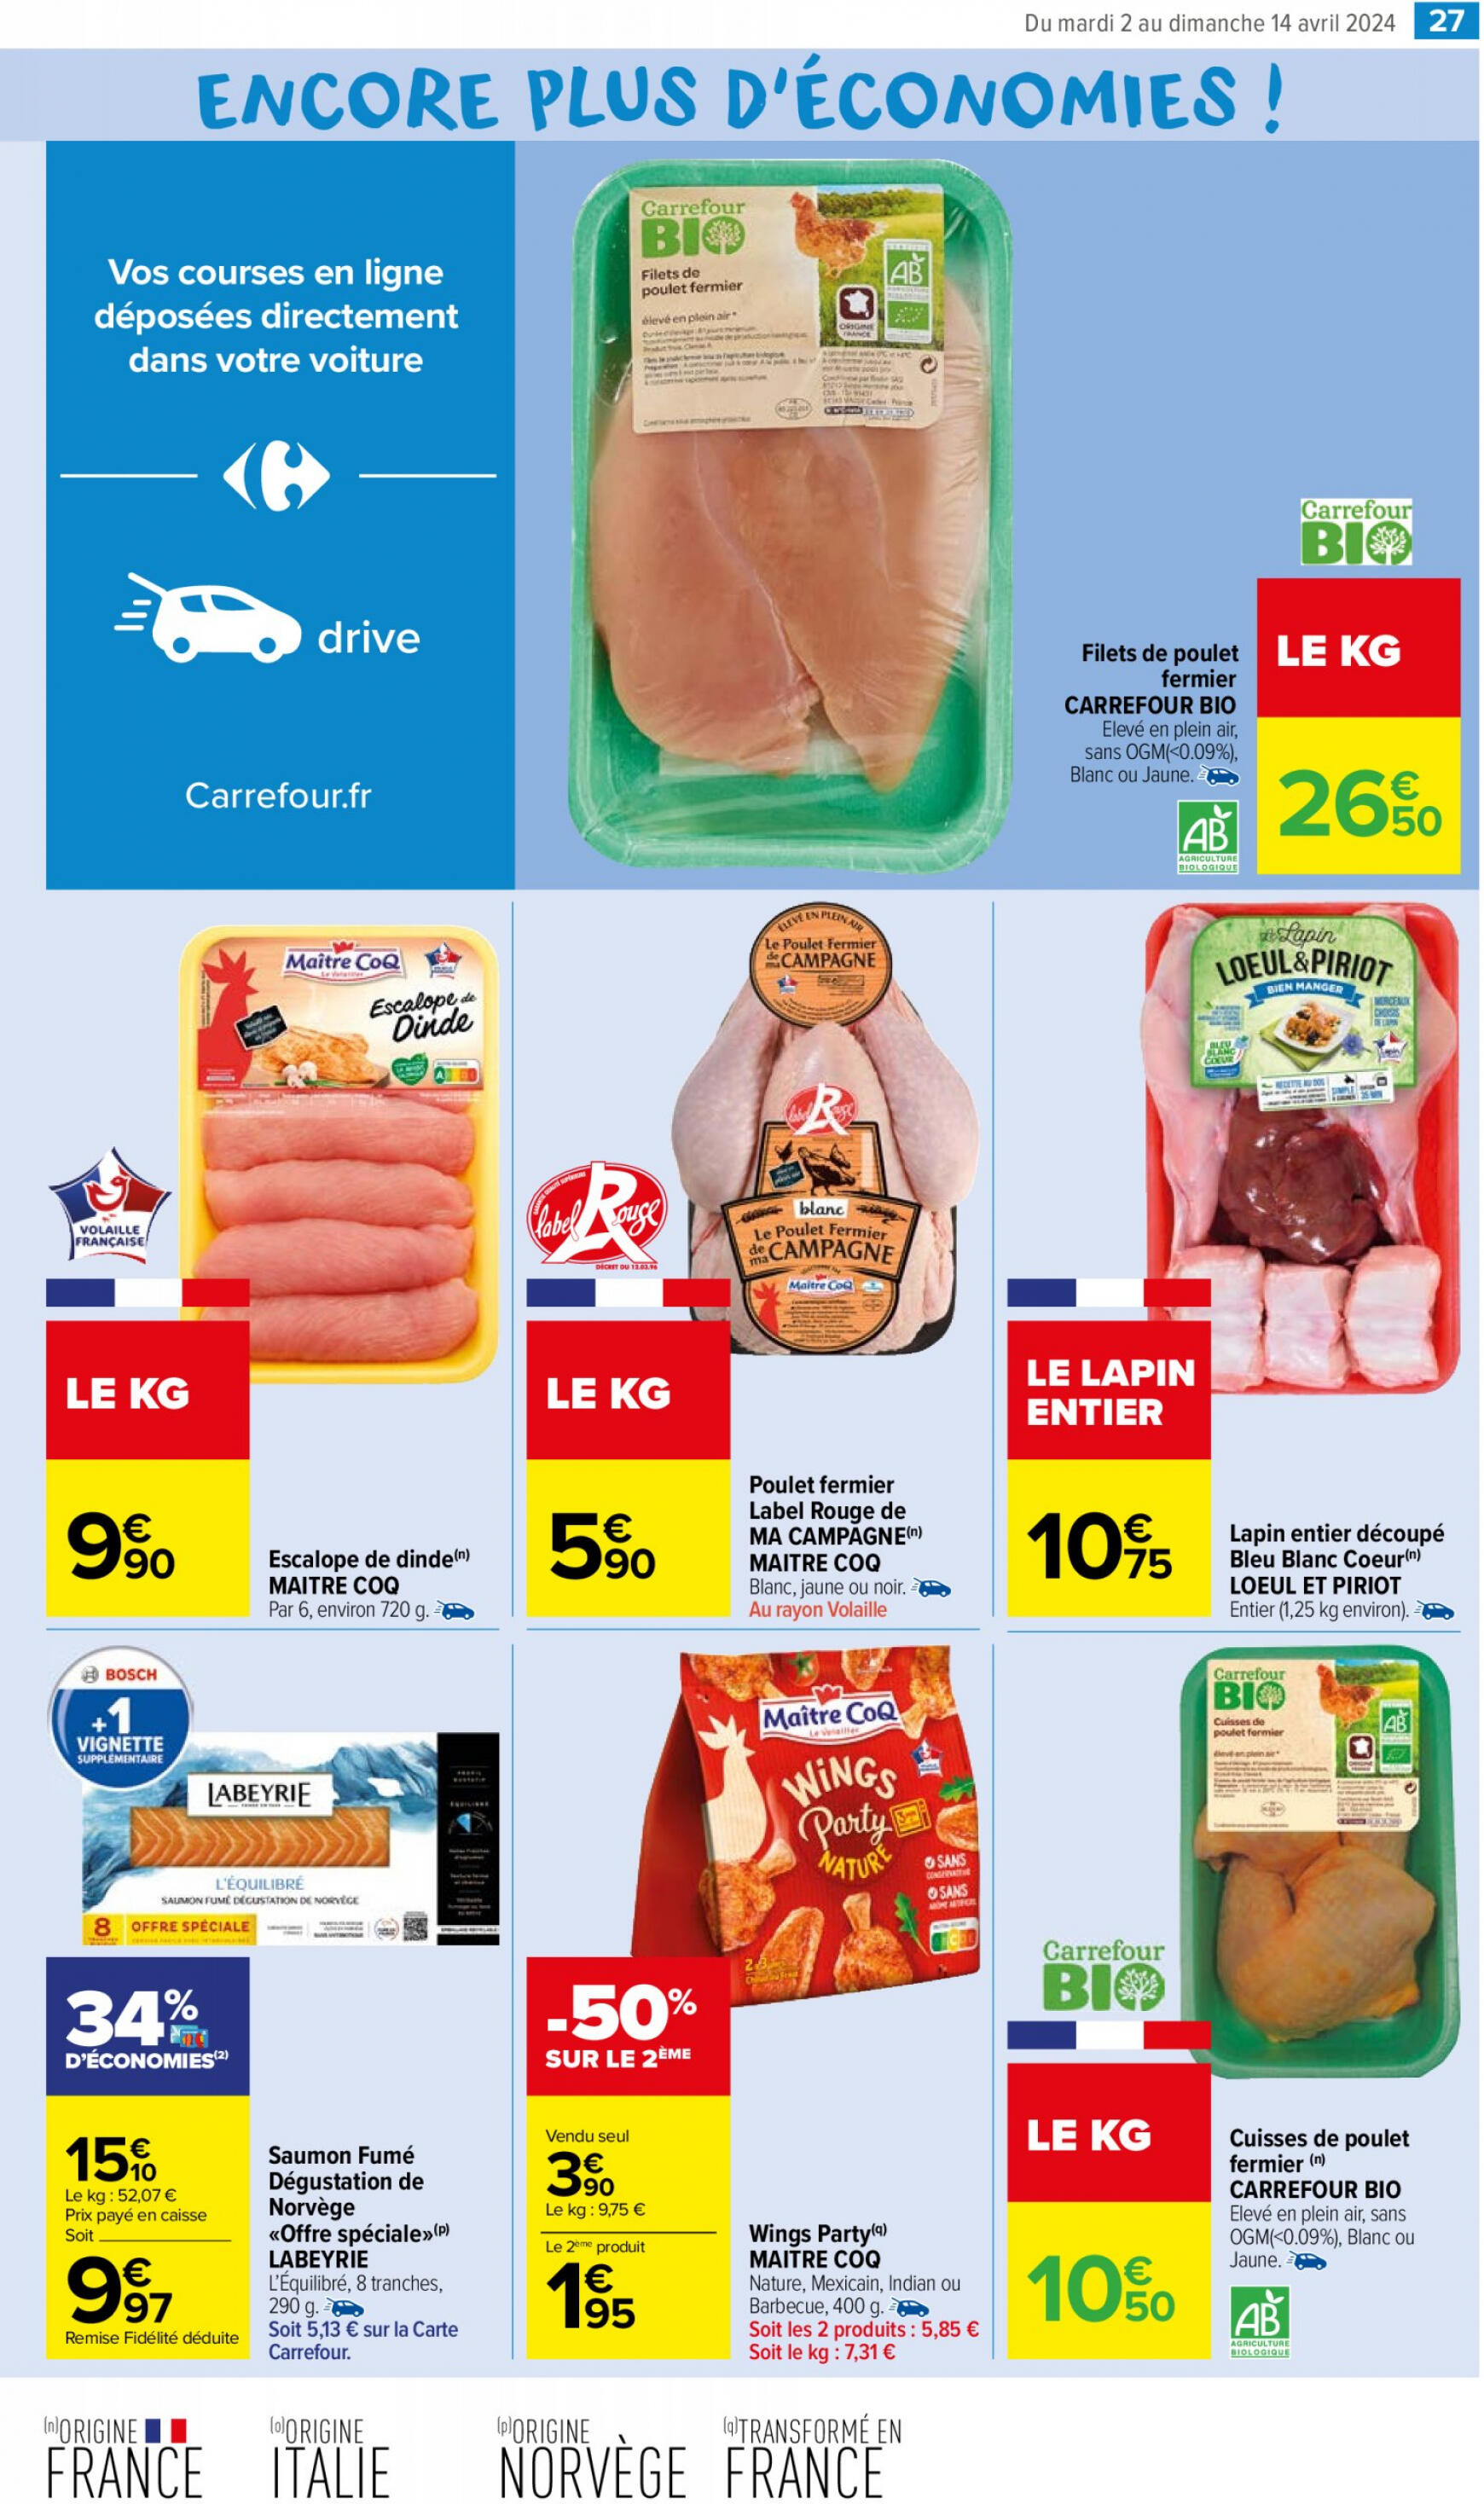 carrefour-market - Carrefour Market - Un MIAM pour les produits laitiers valable à partir de 02.04.2024 - page: 31